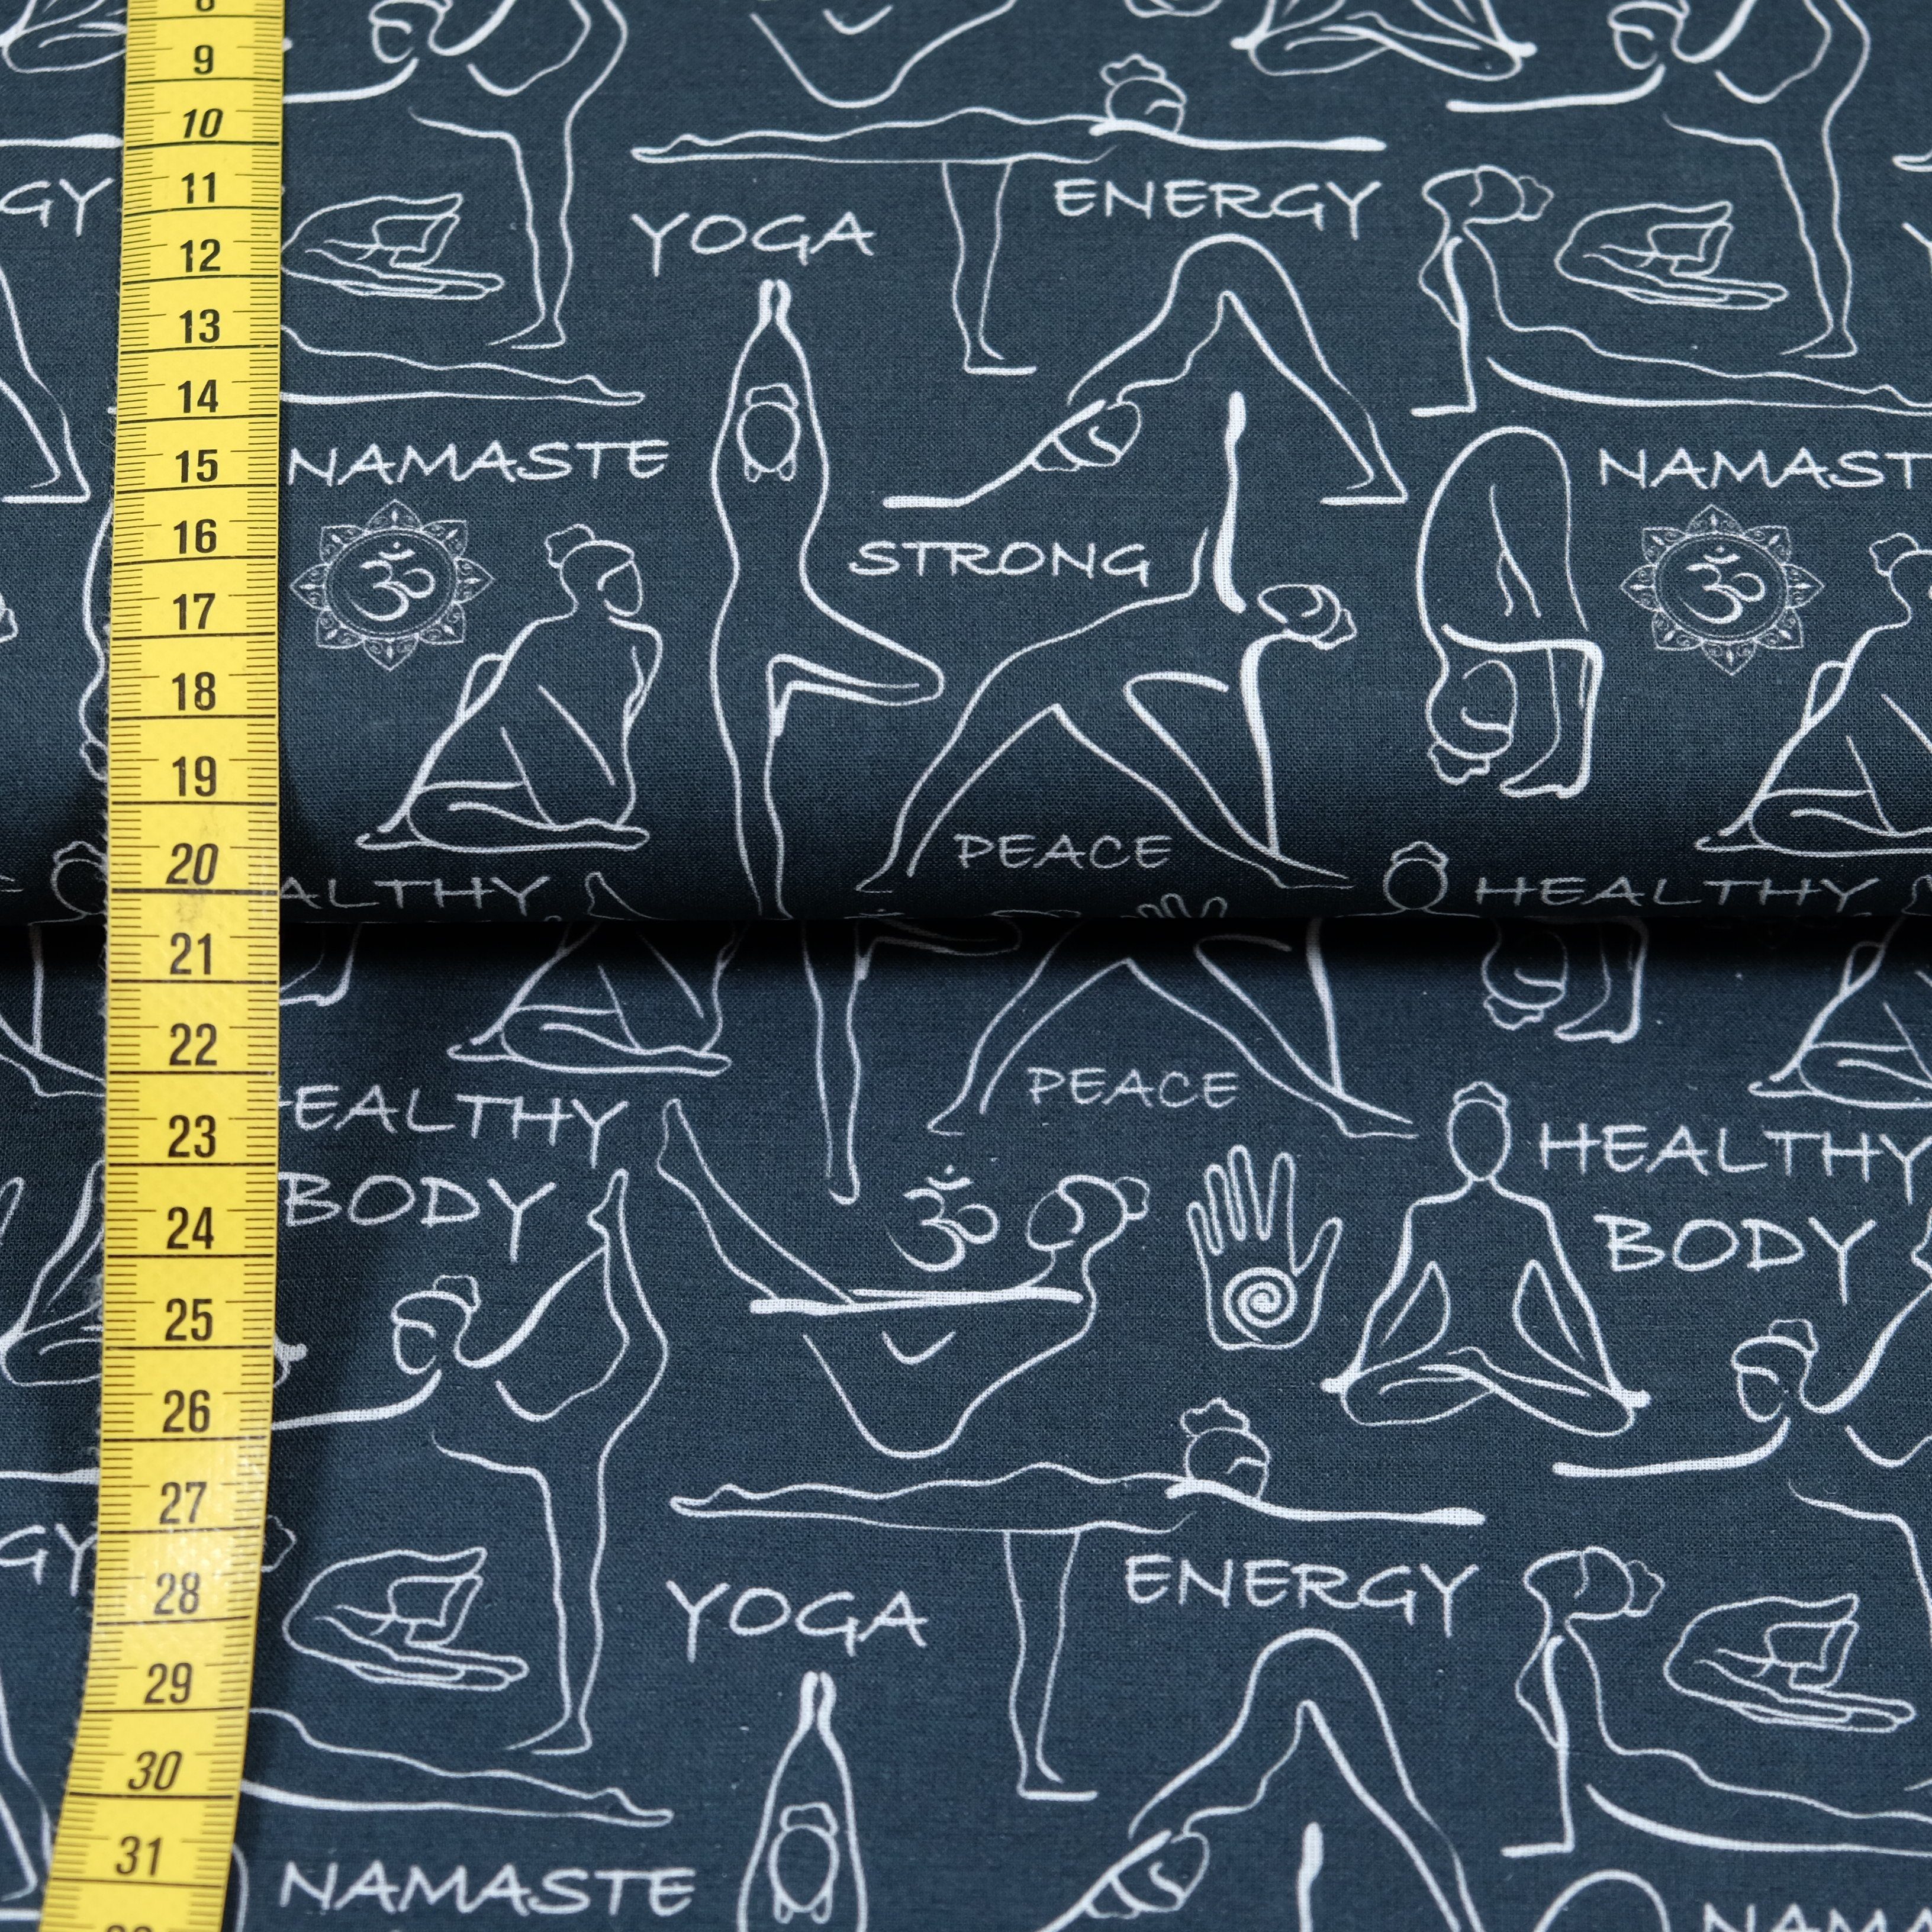 larissastoffe Stoff Baumwollstoff Yoga Dekostoff schwarz, 14,90 EUR/m,  Meterware, 50 cm x 140 cm